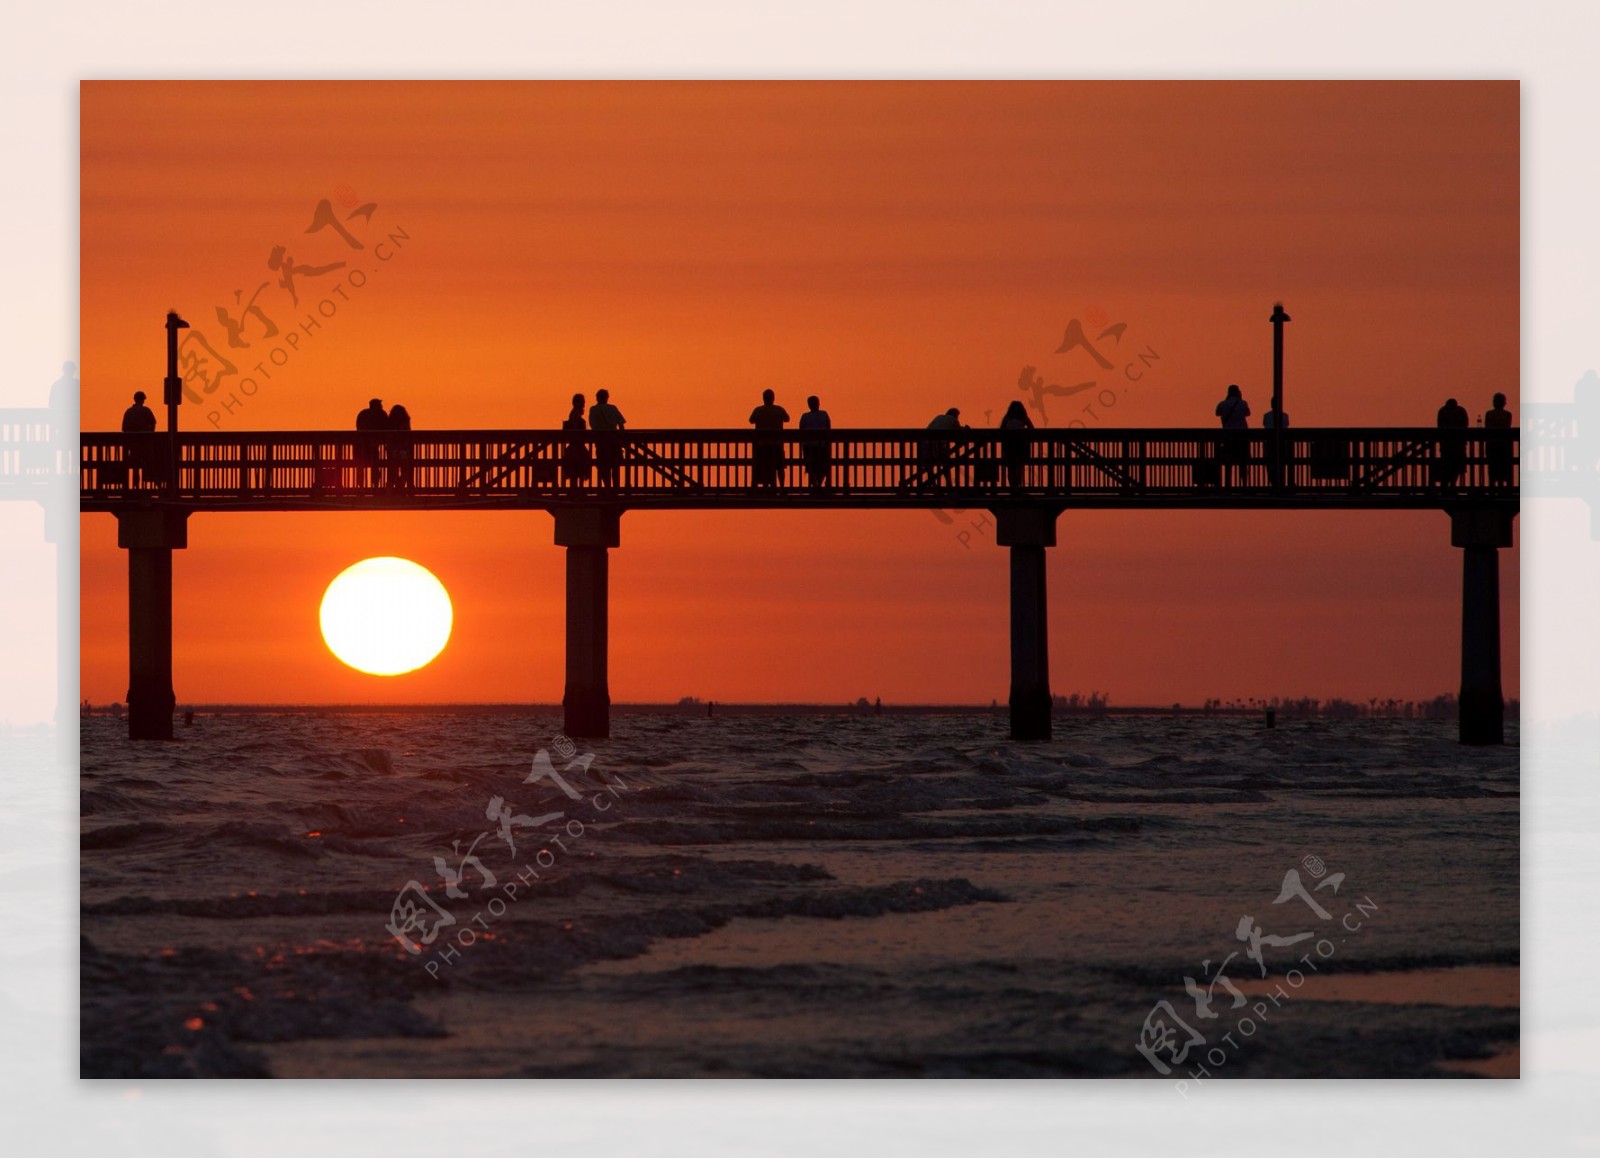 佛罗里达州海滩落日美景图片